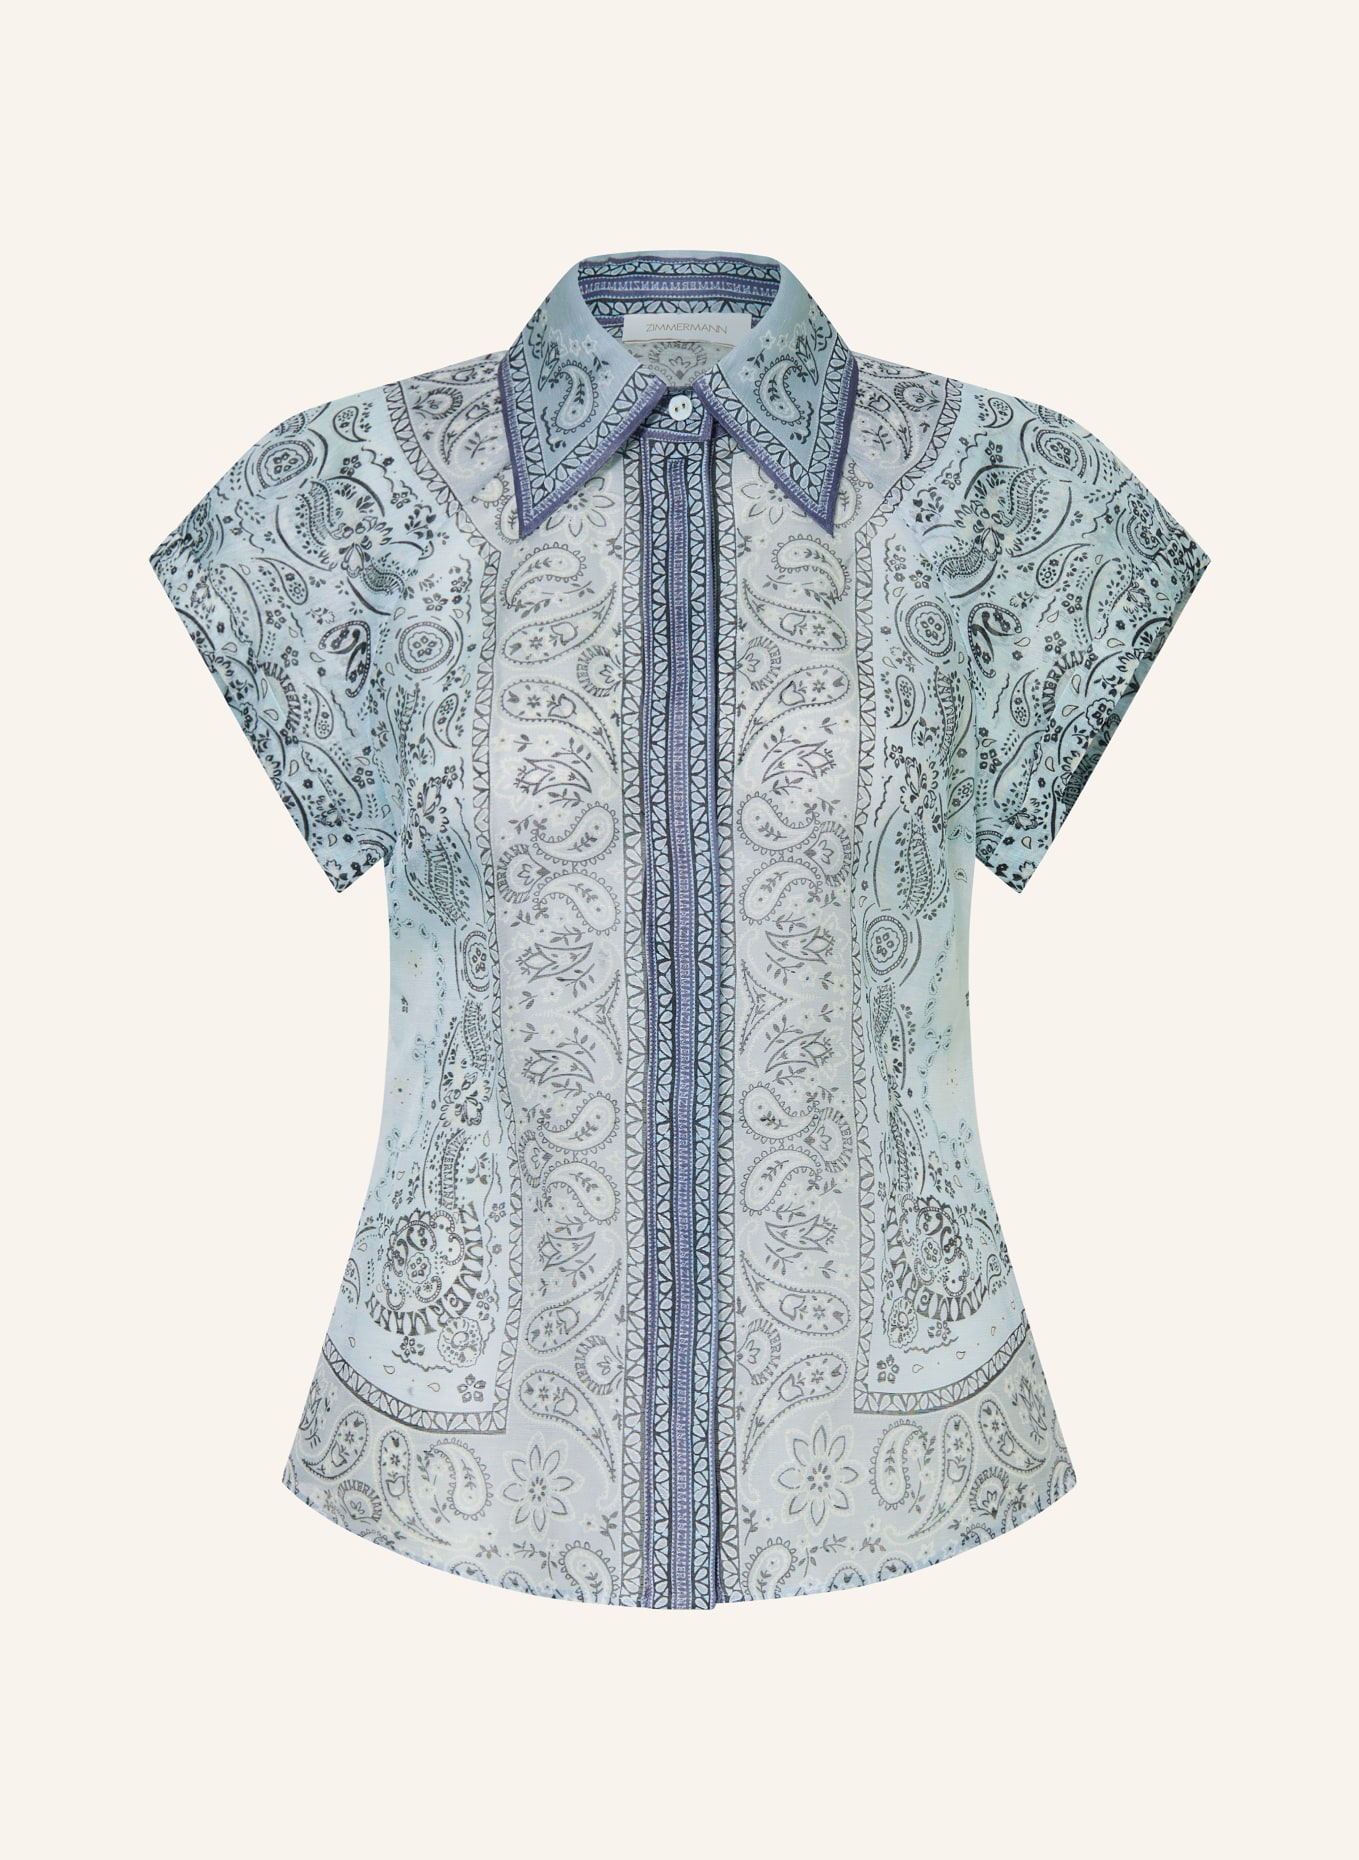 ZIMMERMANN Bluse MATCHMAKER mit Leinen und Seide, Farbe: HELLBLAU/ SCHWARZ (Bild 1)